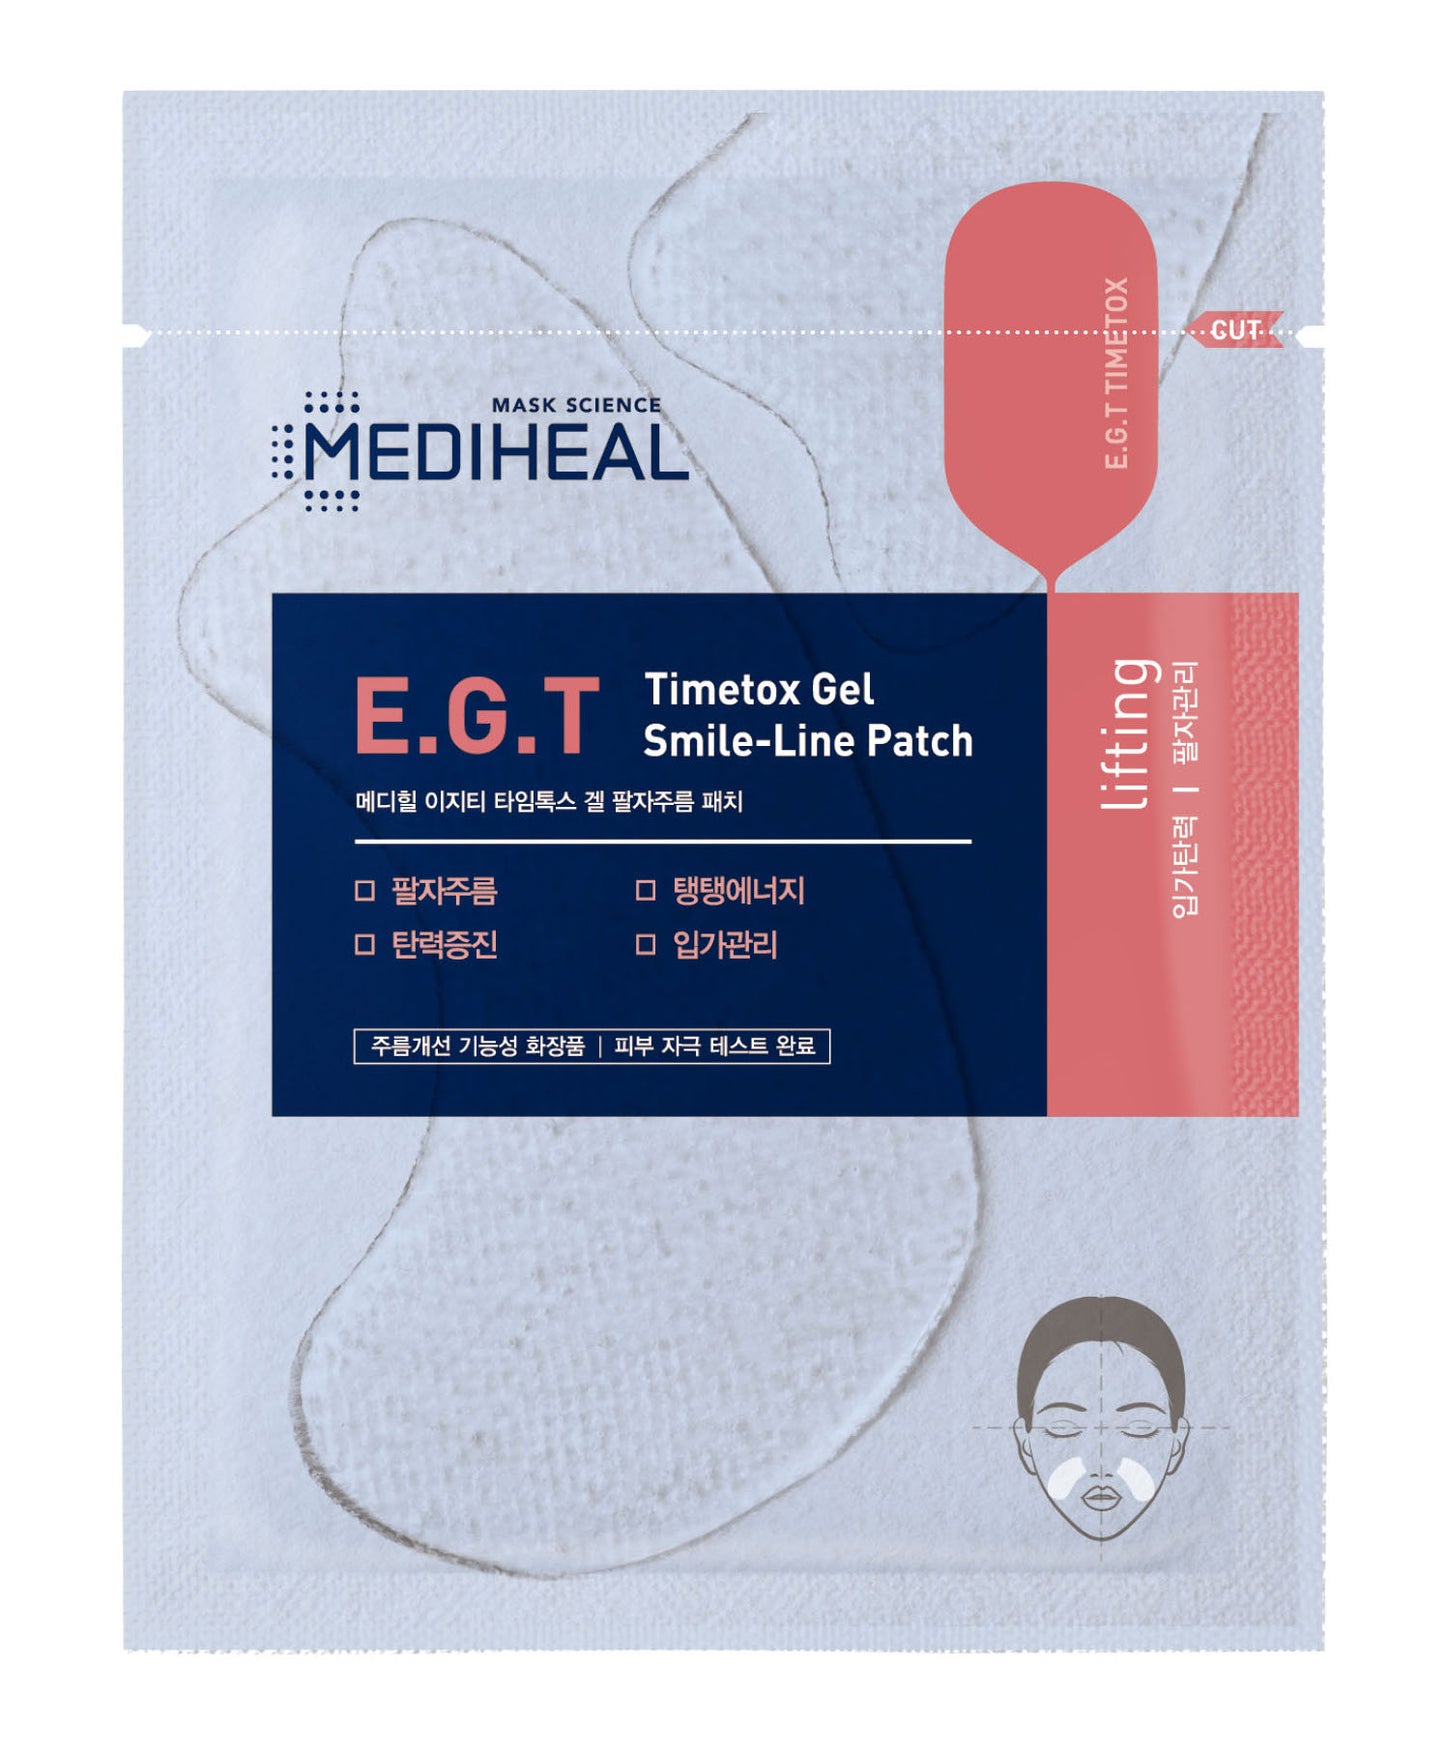 MEDIHEAL E.G.T Timetox Gel Smile-Line